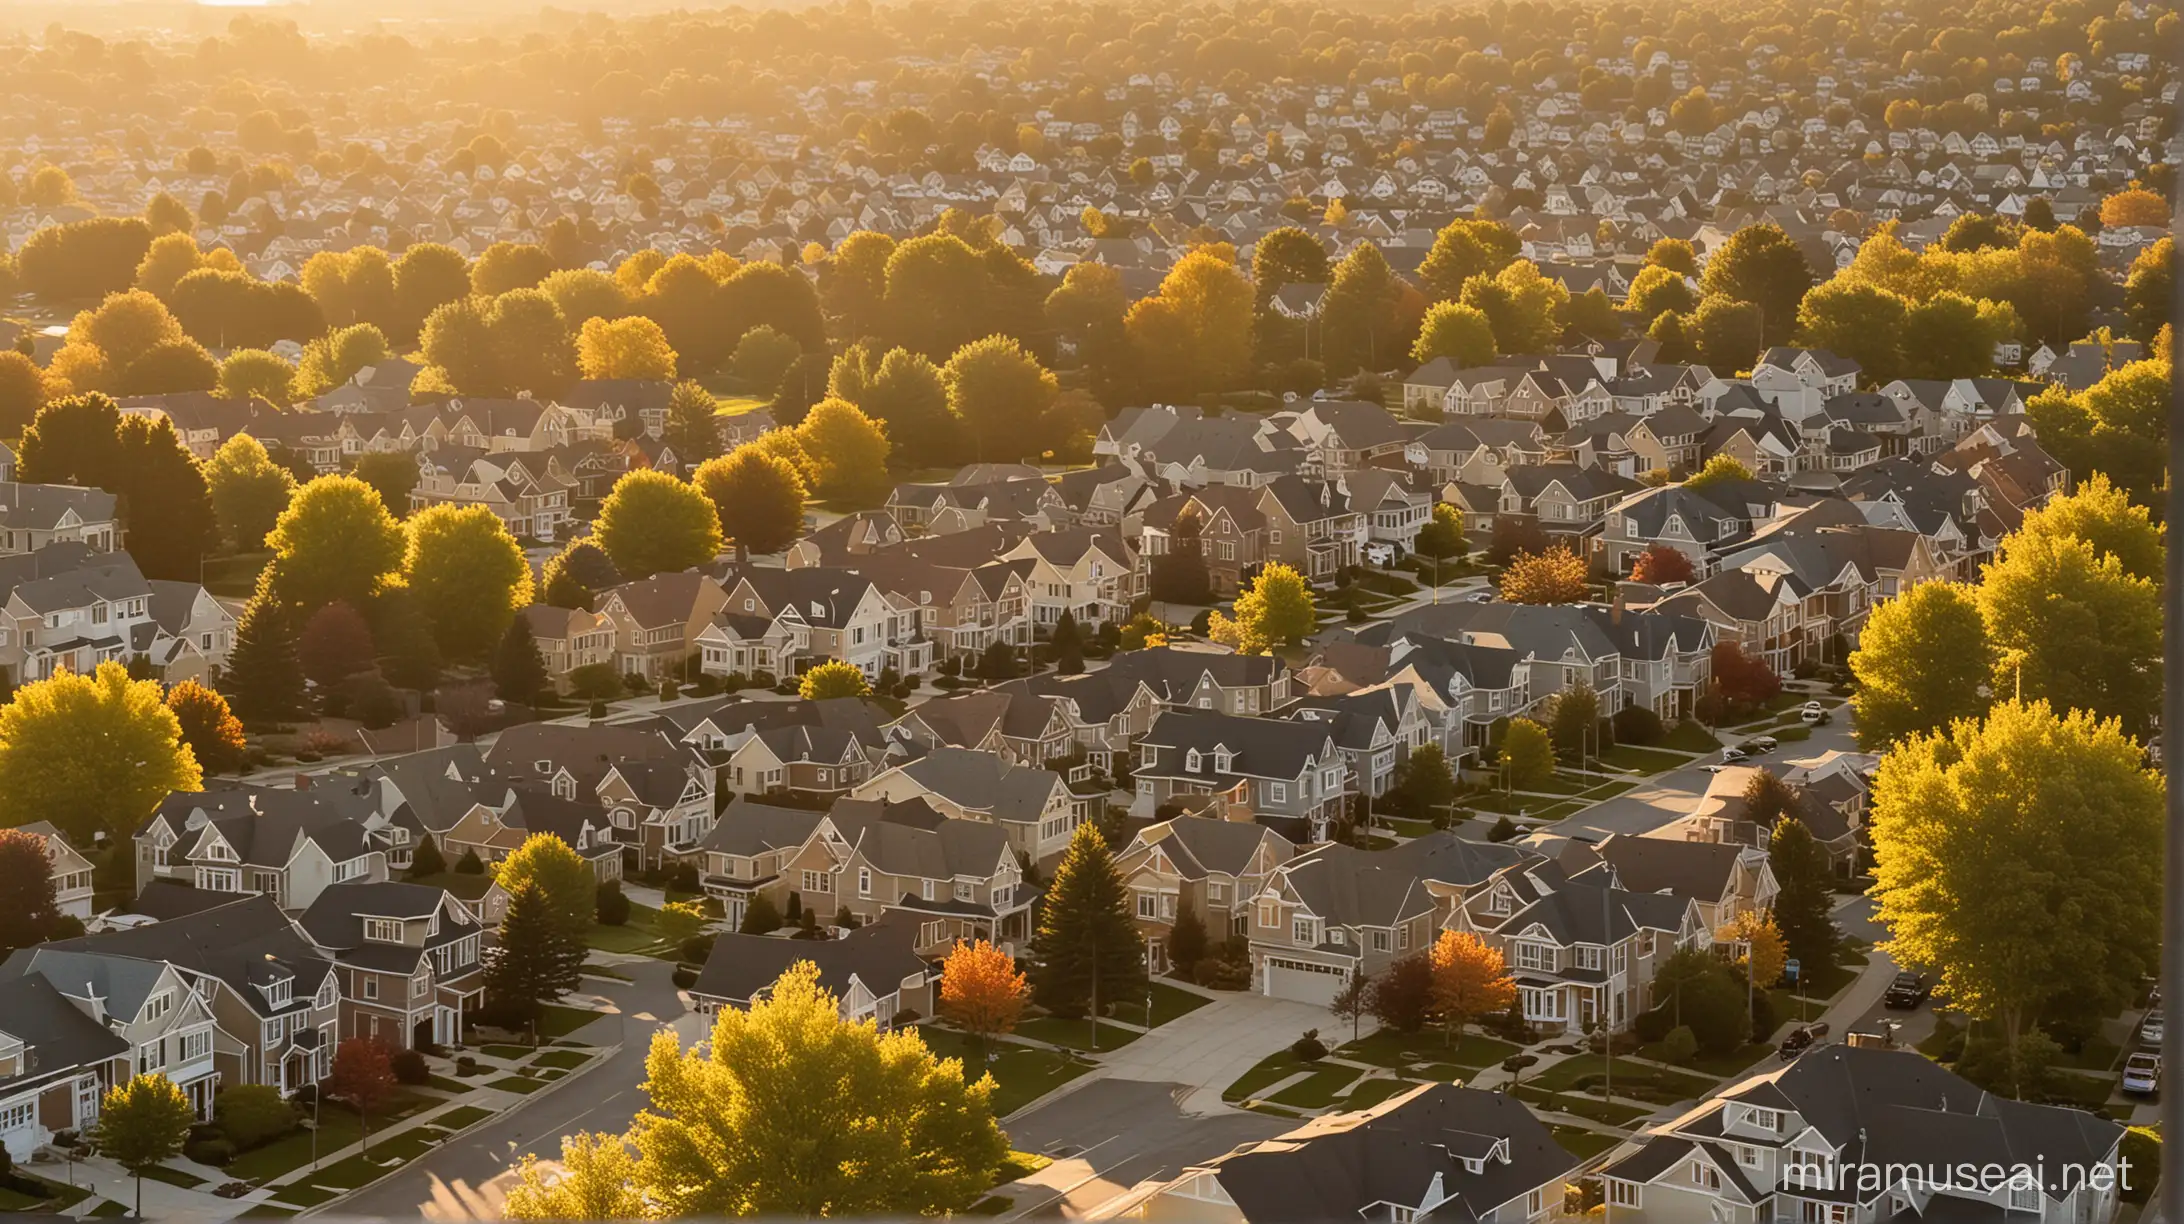 Sunset Family Bonding in a Serene Suburban Neighborhood